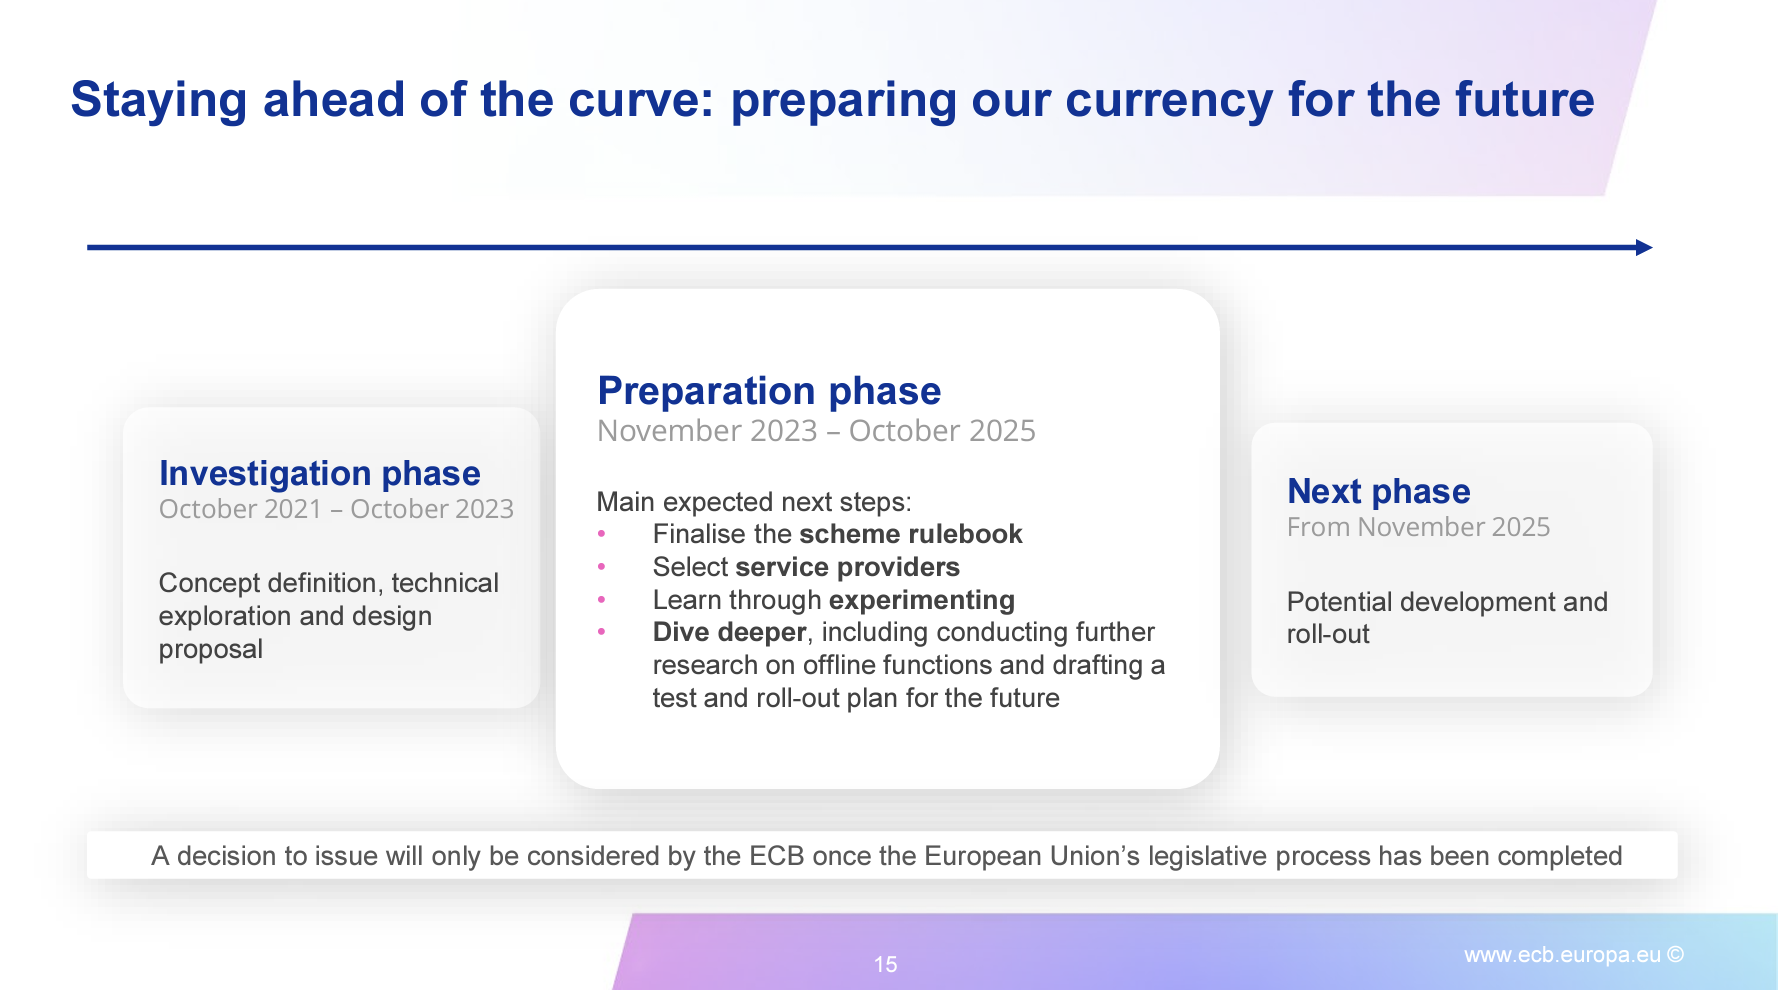 ECB Digital Euro timeline (Source: ECB)